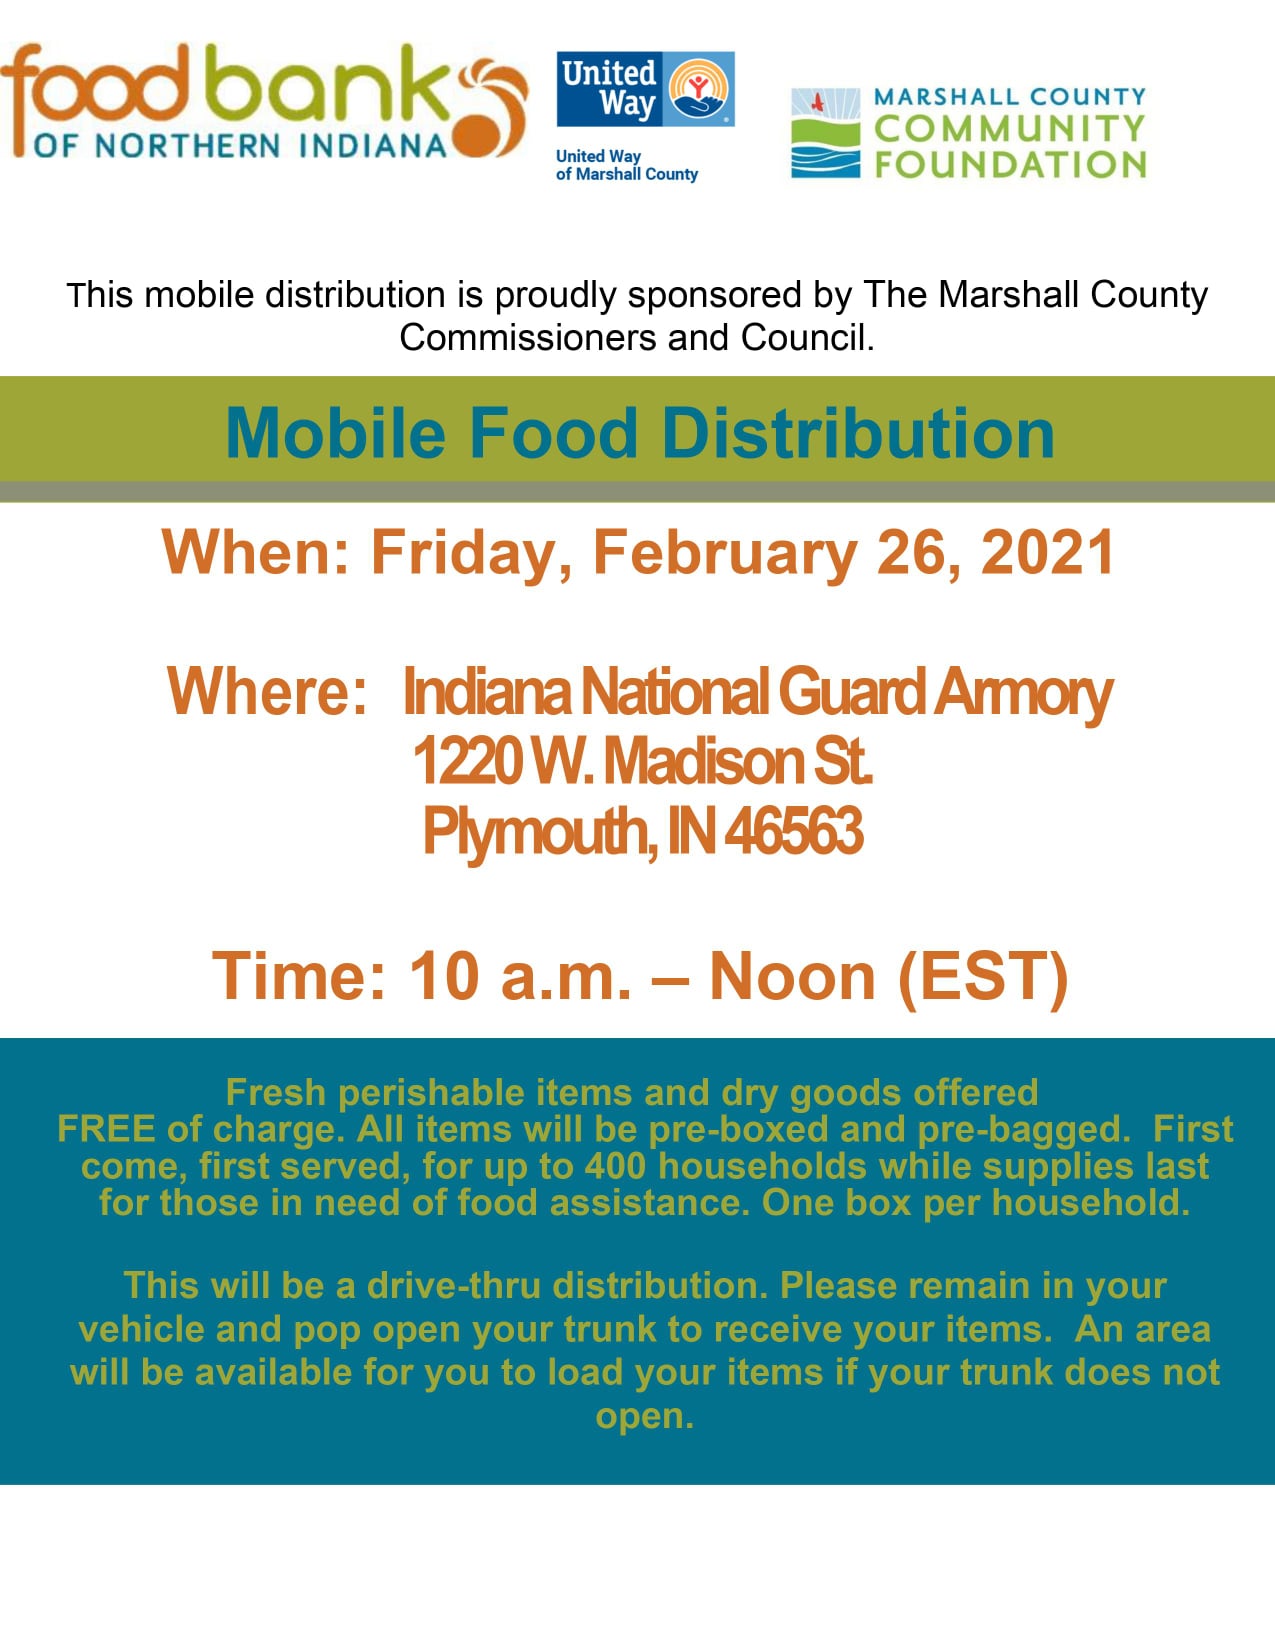 Mobile Food Distribution 2.26